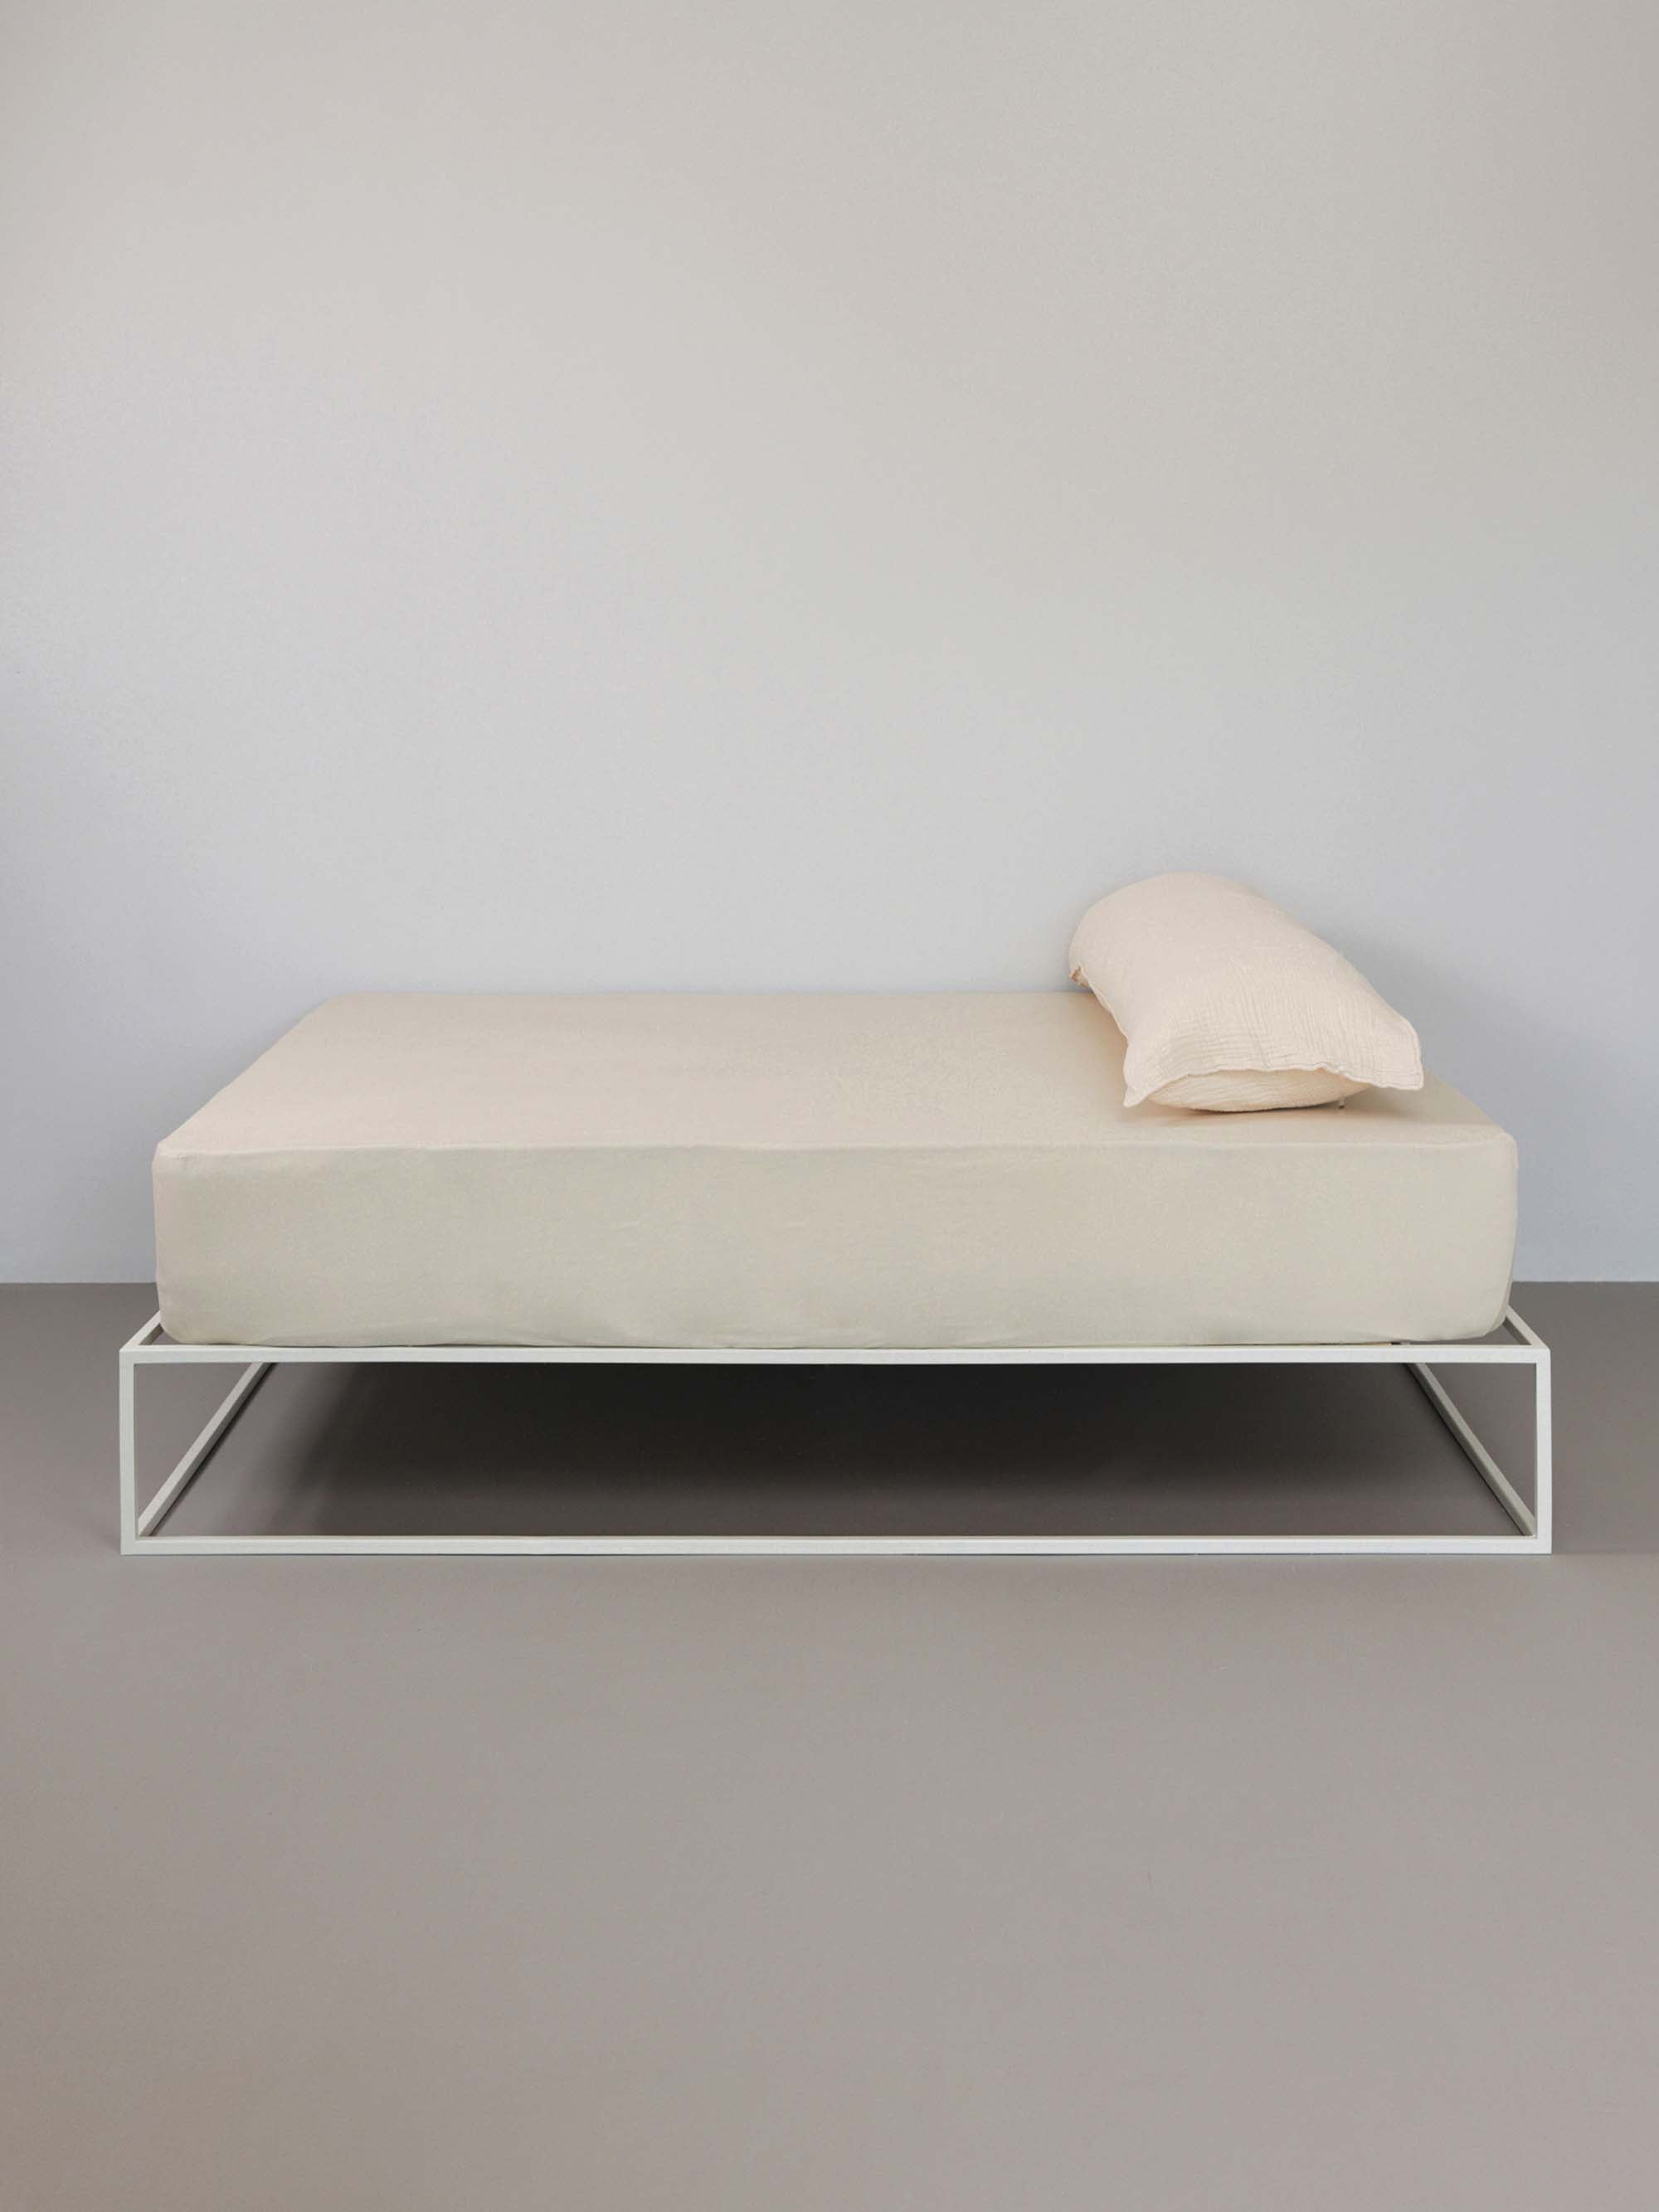 מיטת ברזל לבנה עם סדין, כרית וציפית לכרית ארוכה בצבע אבן